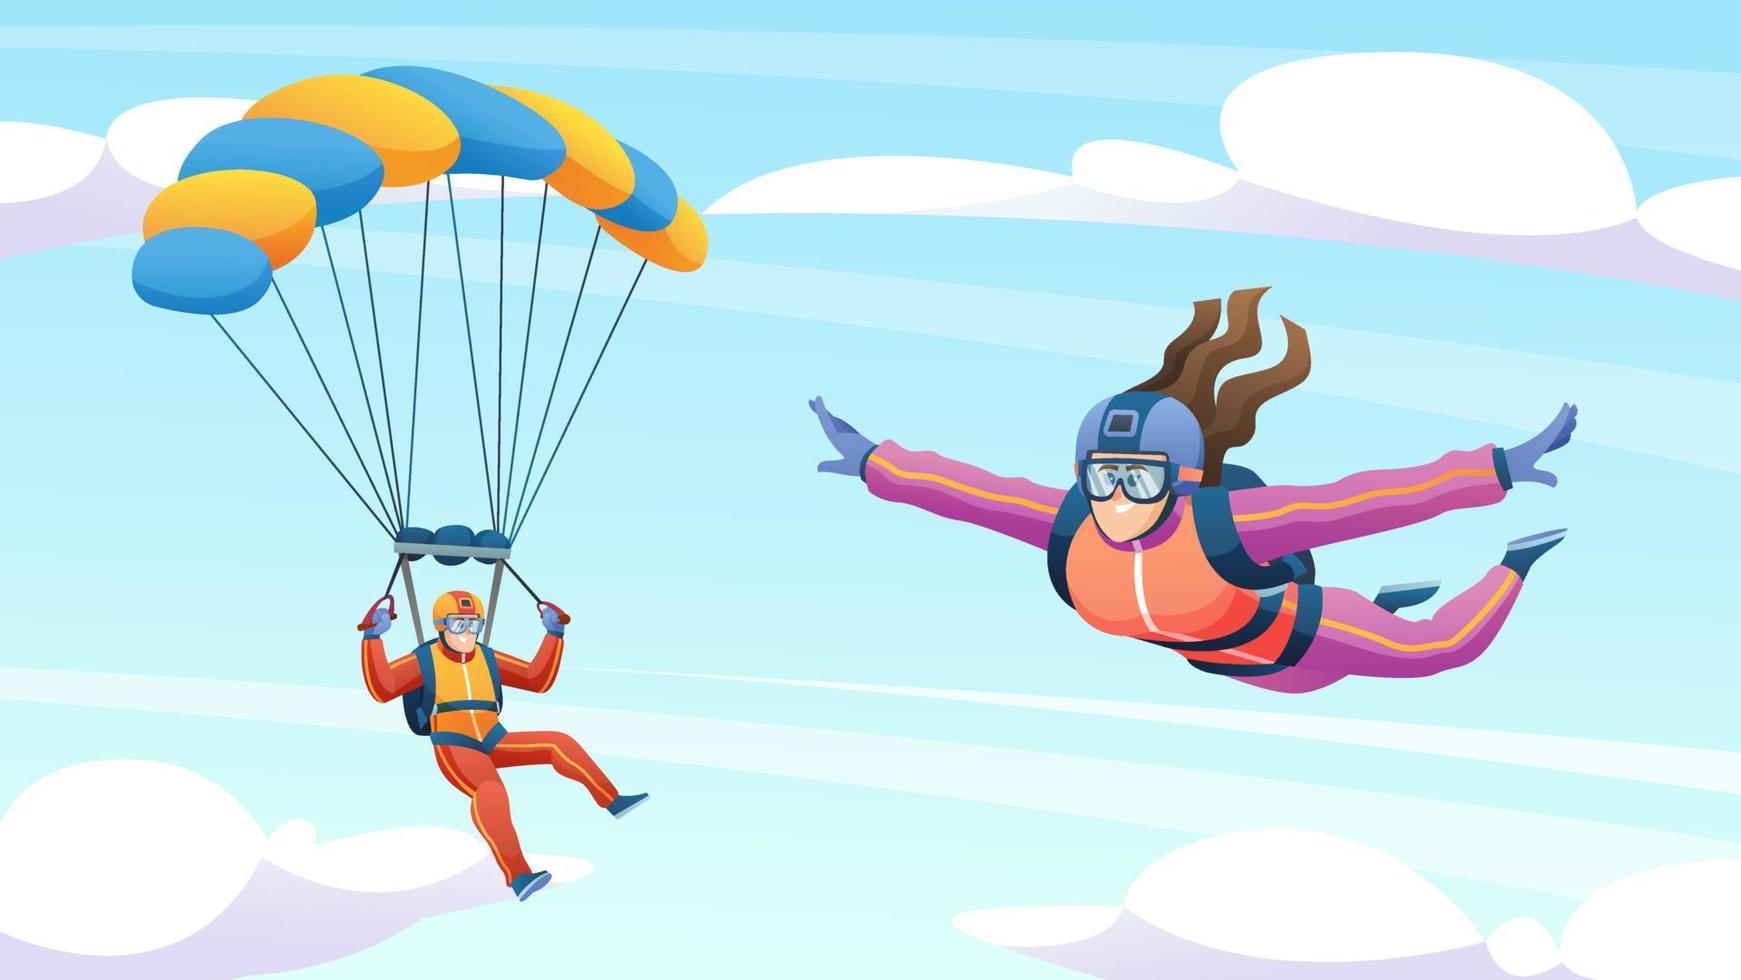 människor fallskärmshoppning och fallskärm i himlen tecknad illustration vektor